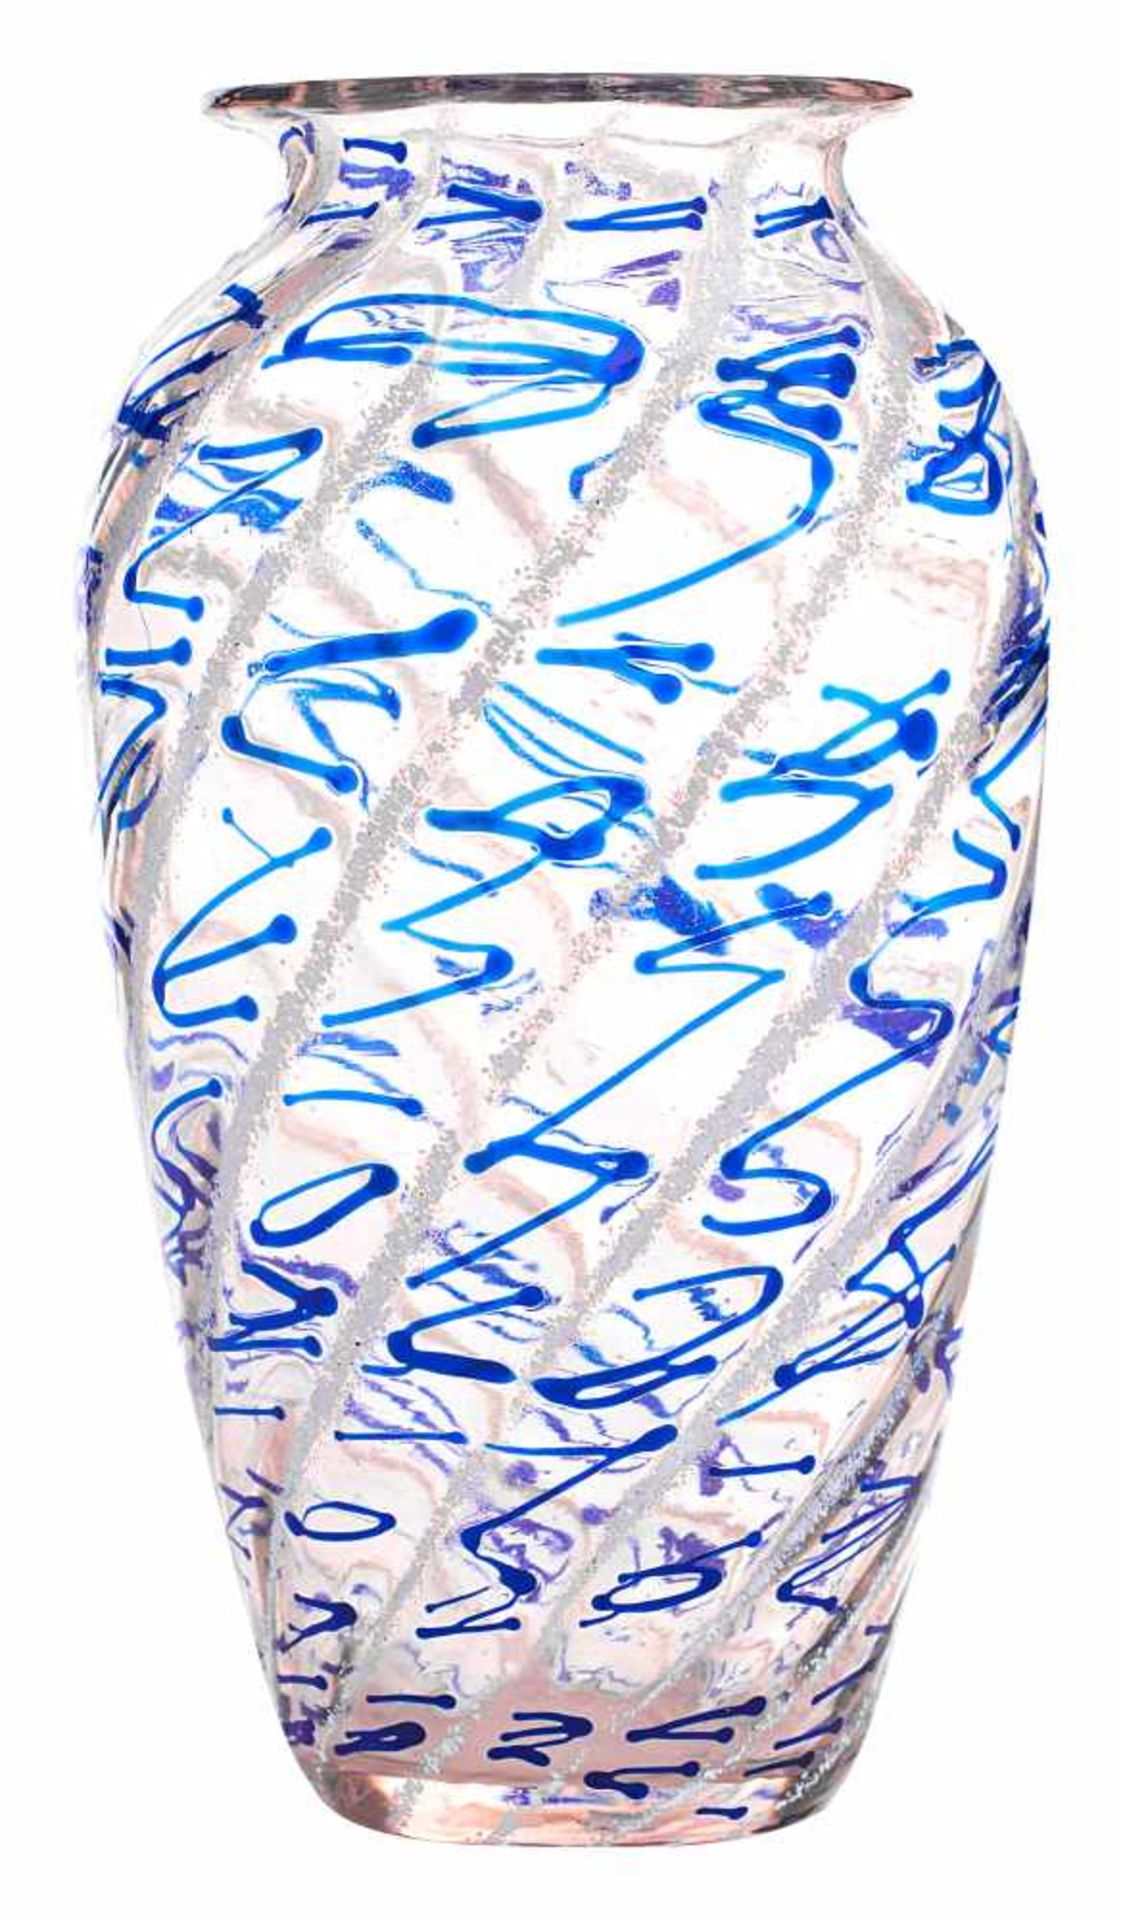 Vase mit Spiralen und blauem Fadendekor